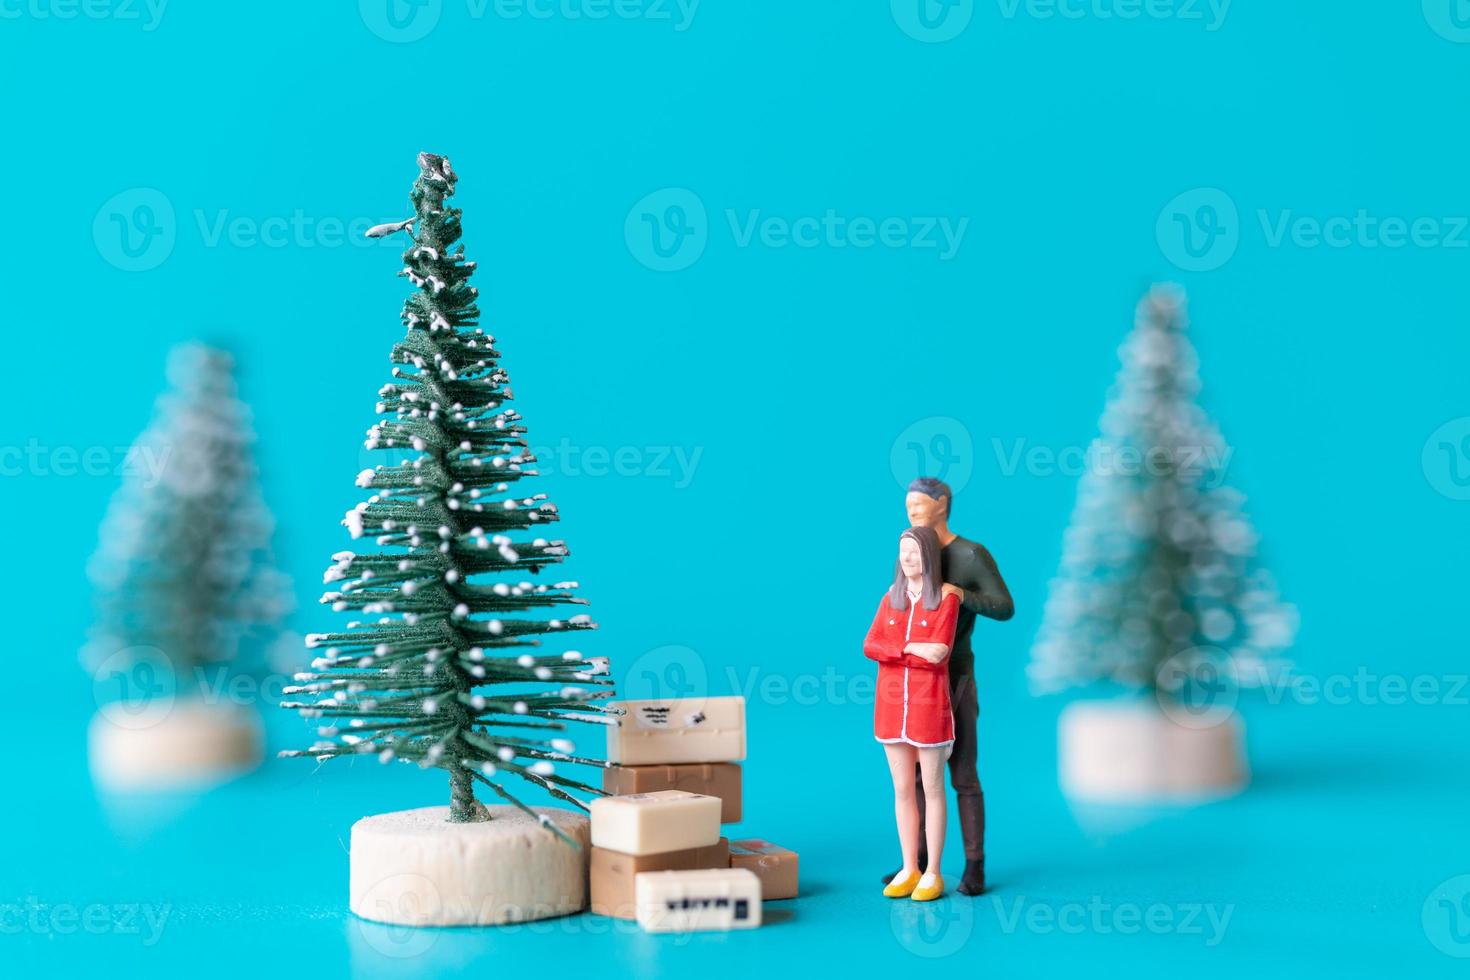 miniatuur mensen, verliefd stel naast een kerstboom foto